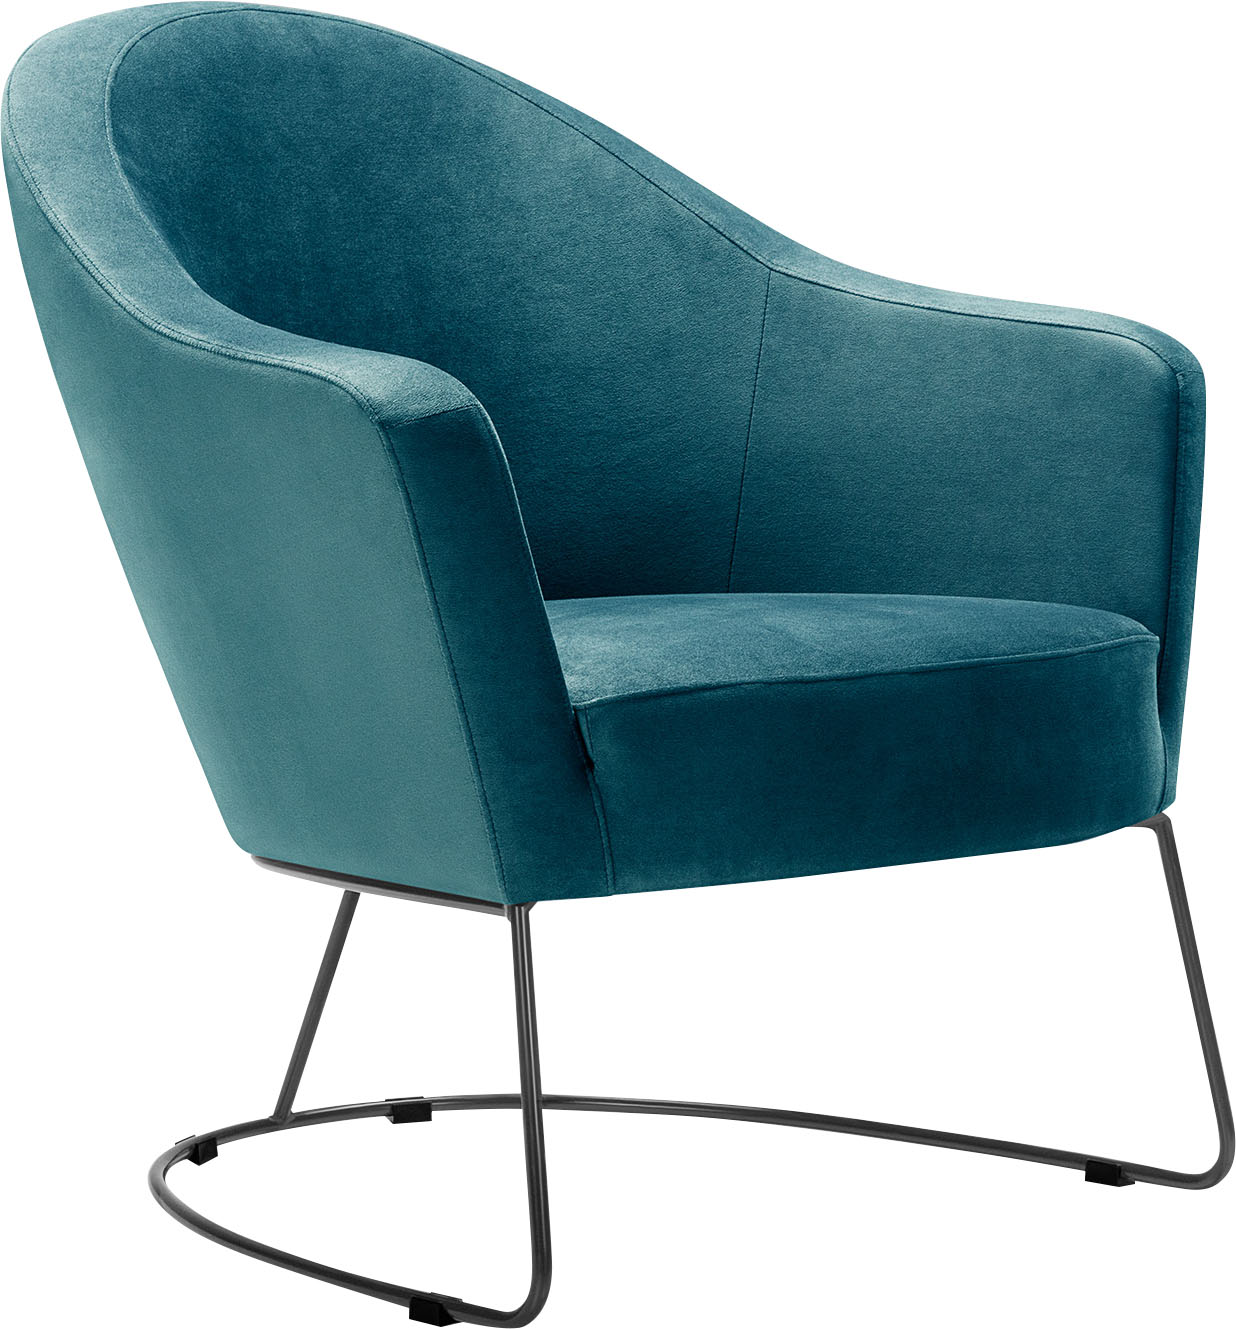 LOVI Loungesessel Grape, Metallrahmen grau, Sitzfläche in hochwertigem Formschaum für ein leichtes, luftiges Sitzgefühl